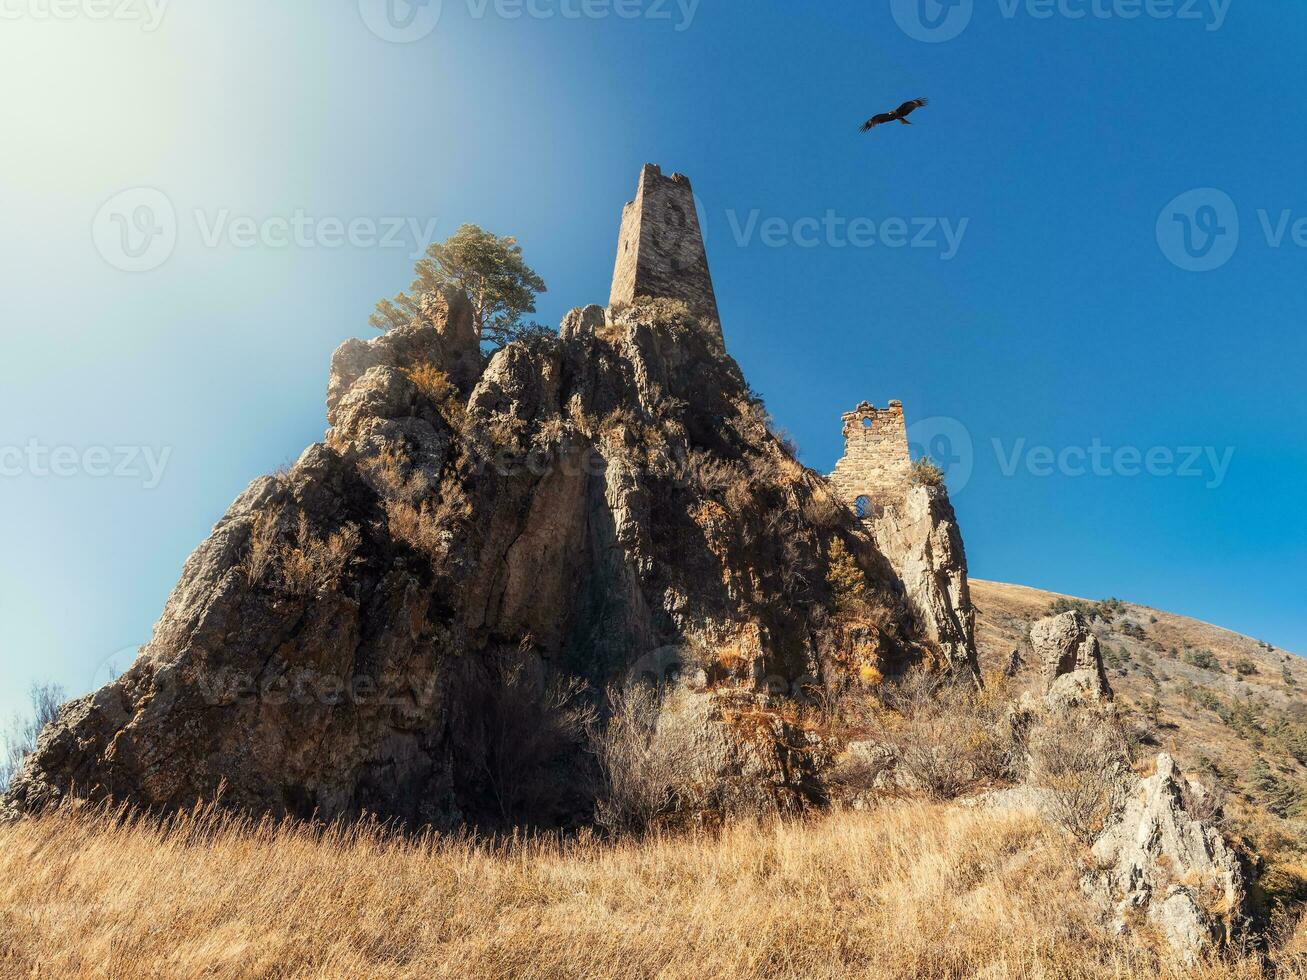 soleggiato pomeriggio nel il Caucaso montagne. medievale Torre complesso vovnushki, uno di il autentico medievale tipo castello Torre villaggi, collocato su il estremità di il montagna gamma nel inguscezia foto